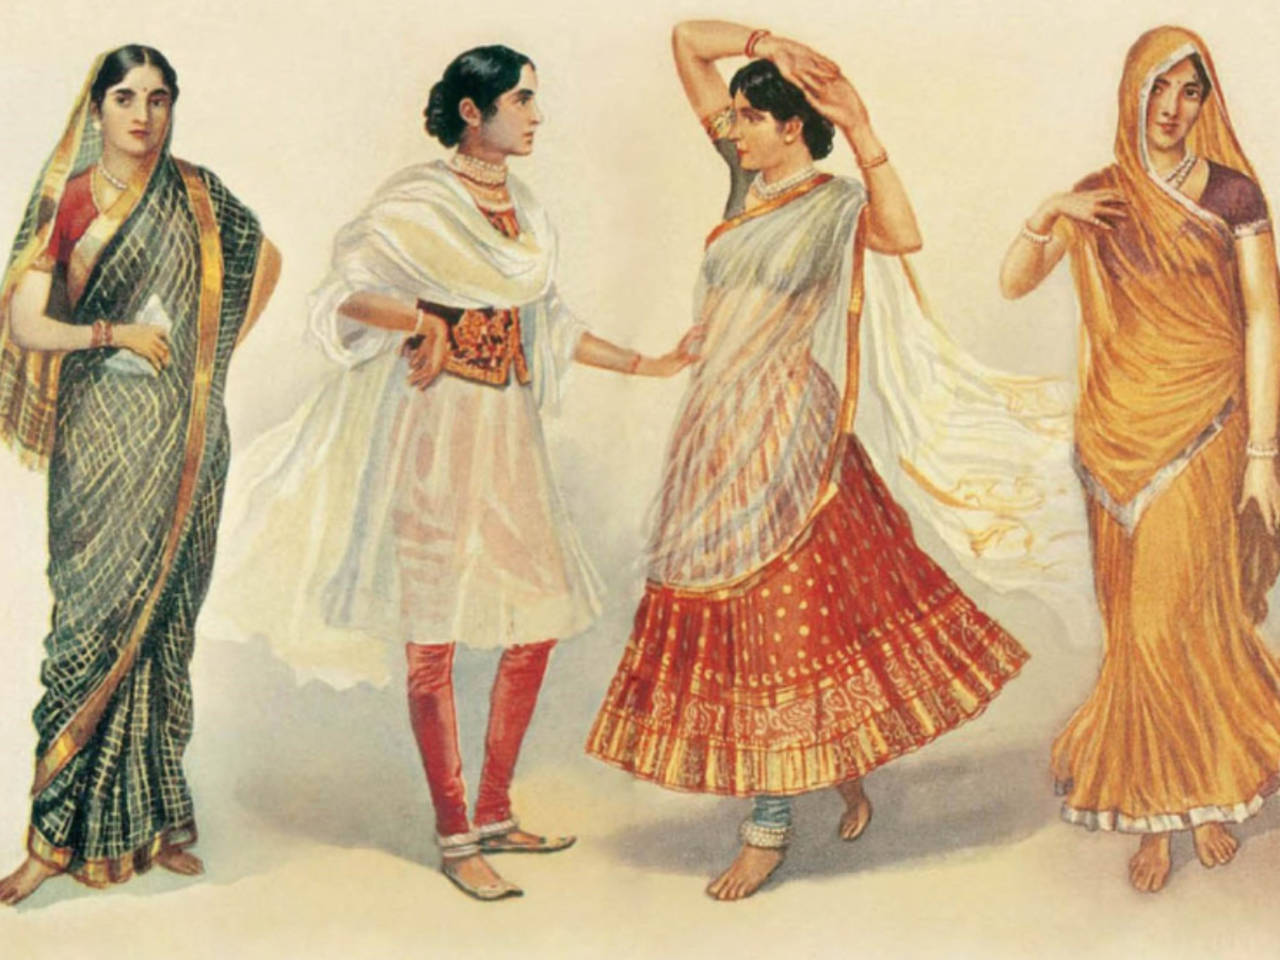 Sari-inspired dress - Wikipedia